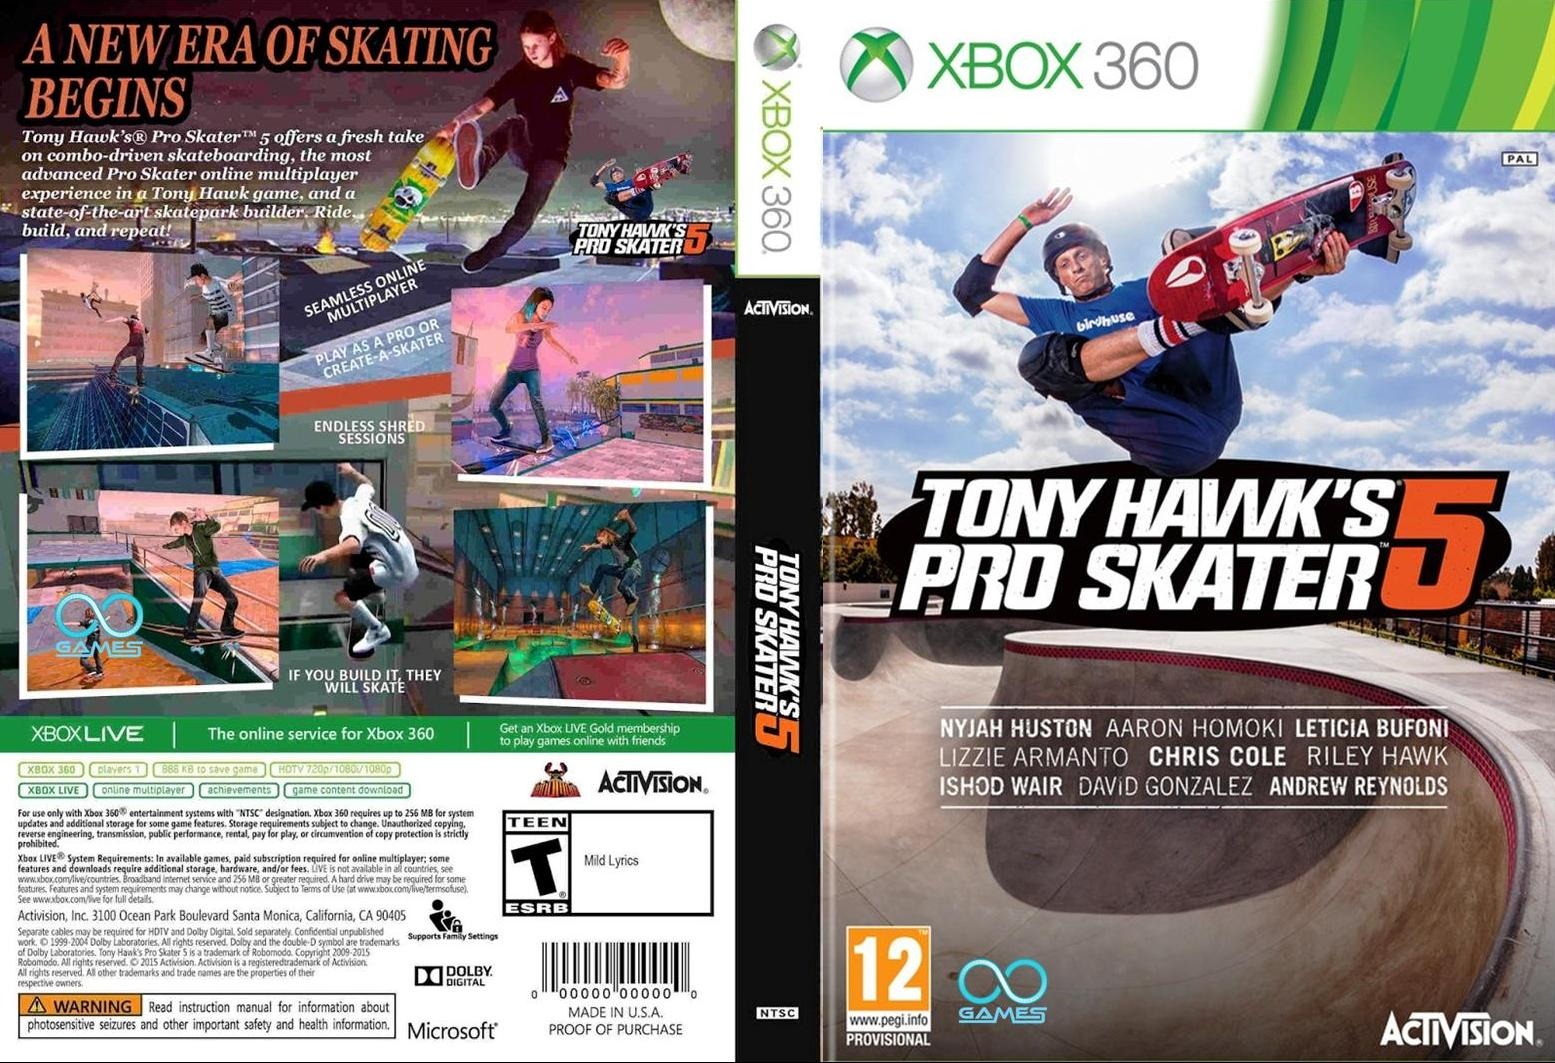 Tony Hawk's Pro Skater 5 box cover